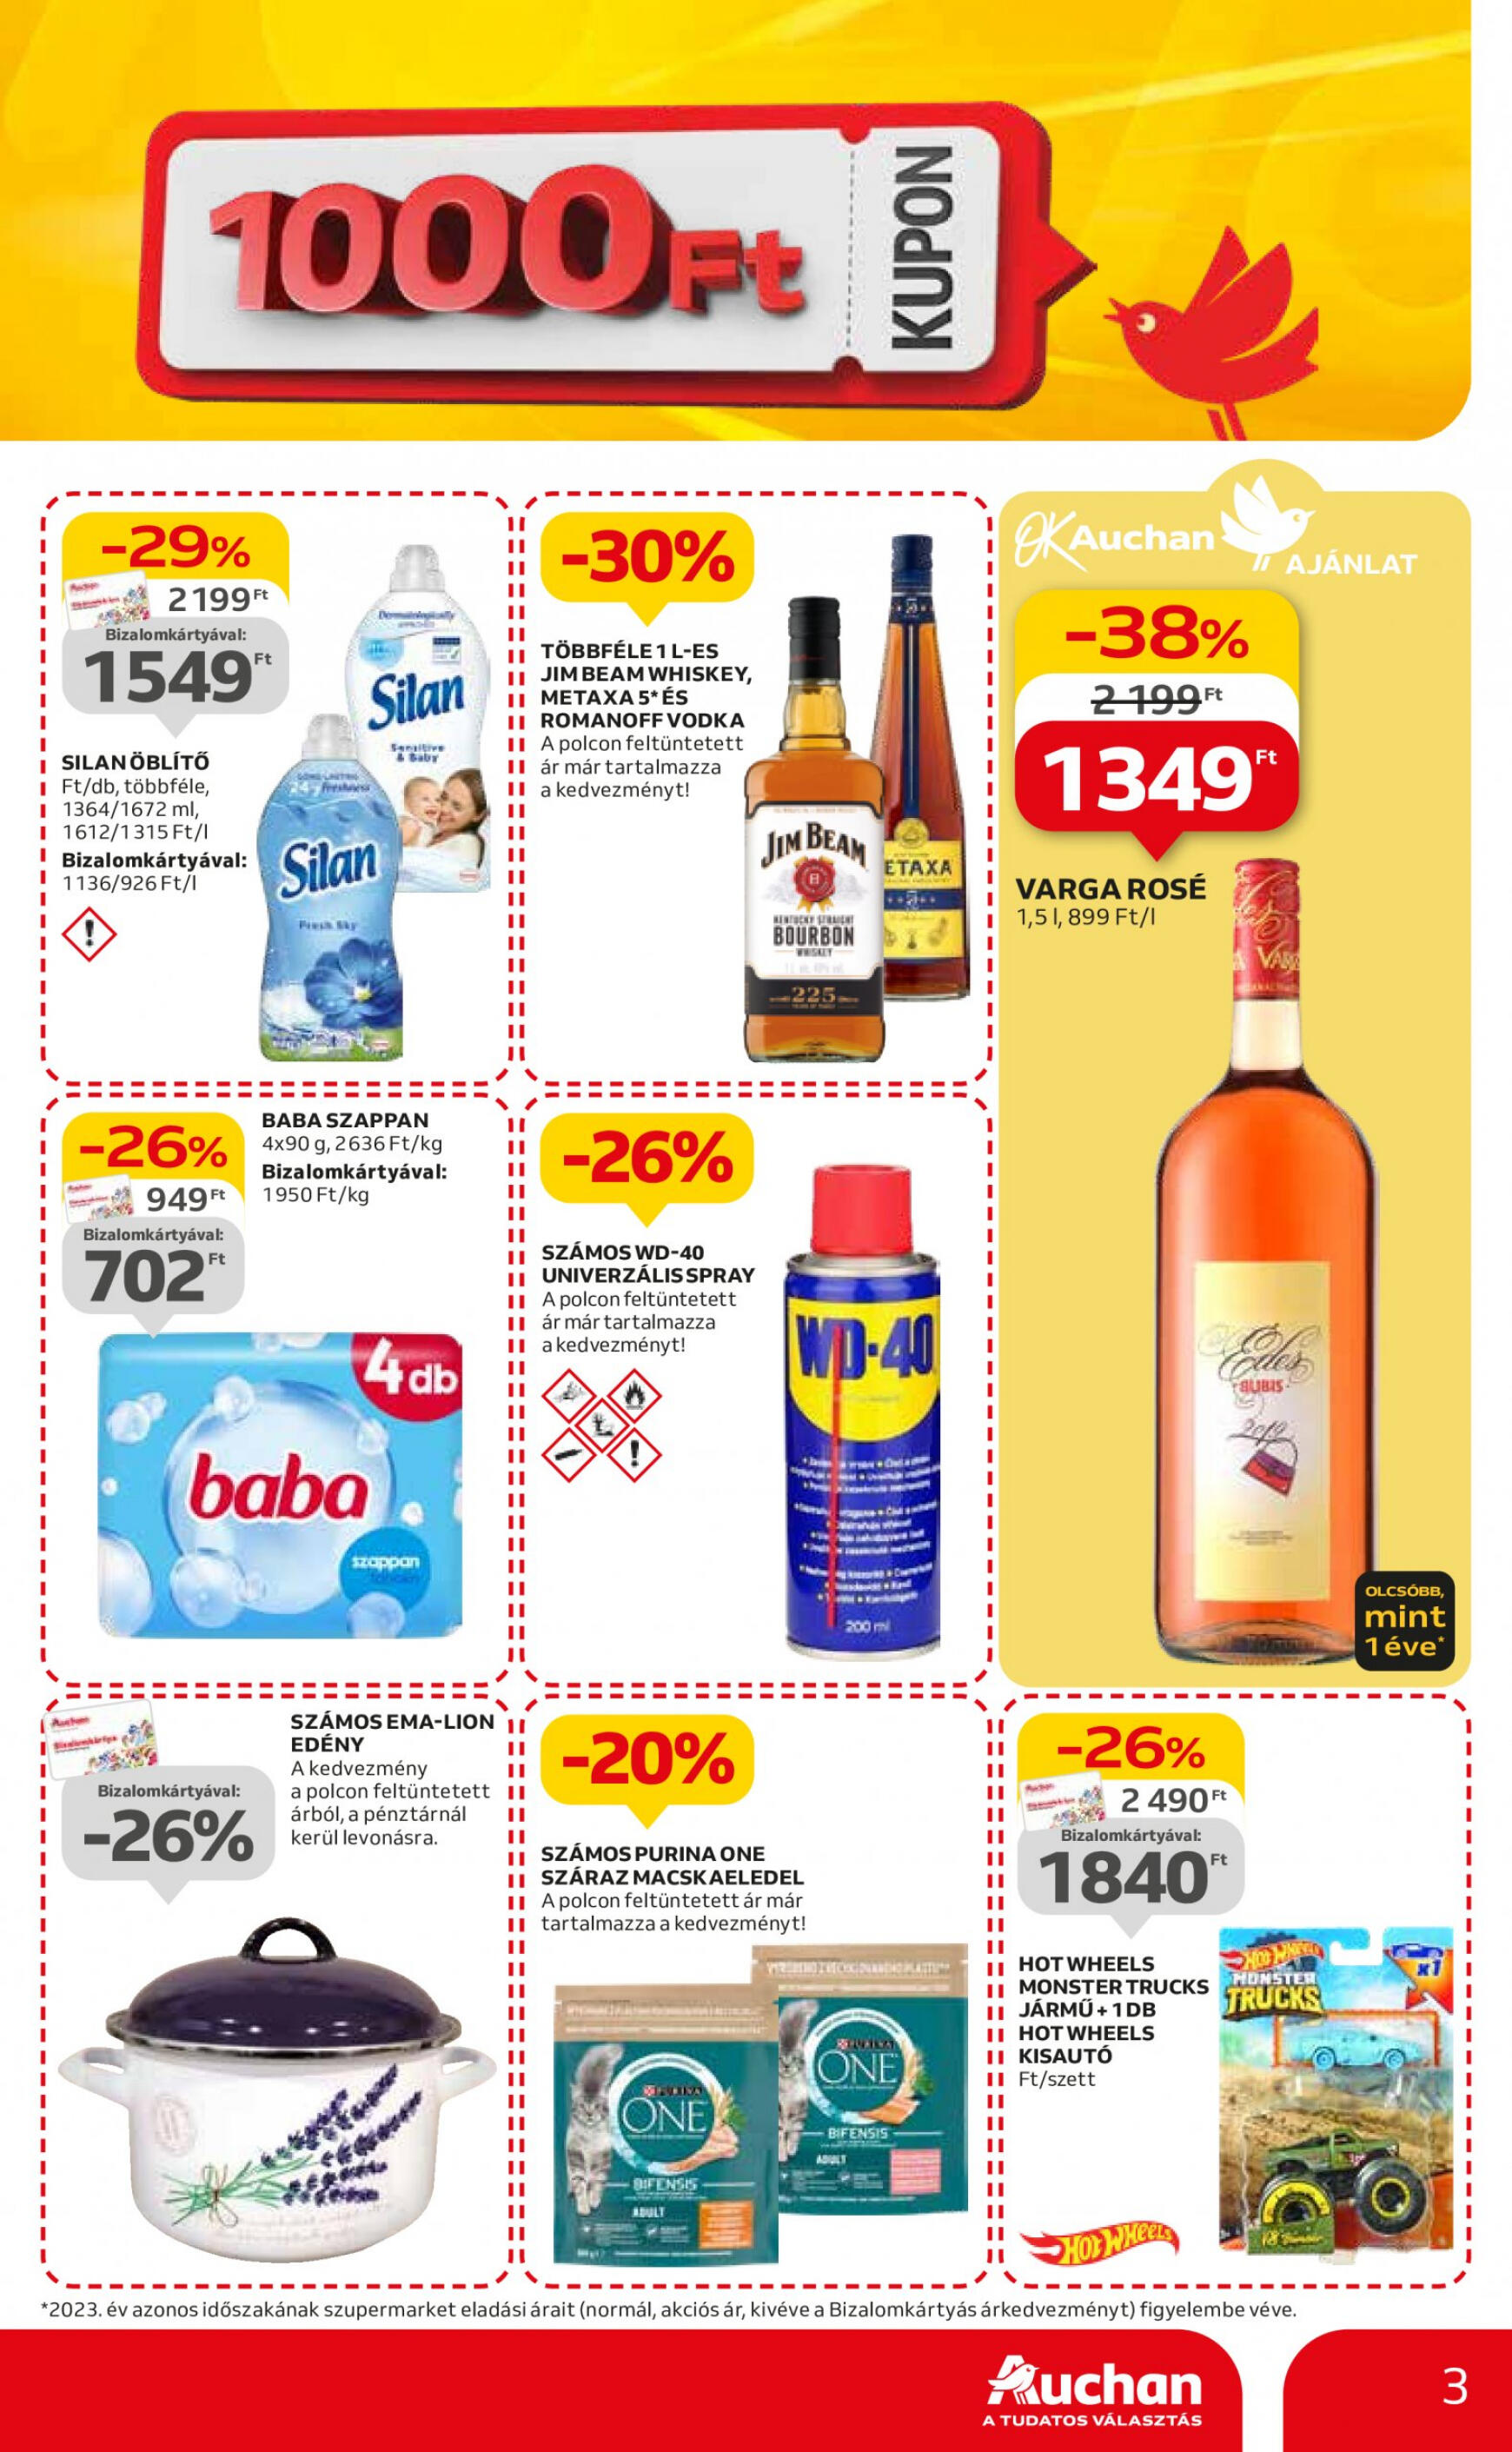 auchan - Aktuális újság Auchan szupermarket 05.09. - 05.15. - page: 3